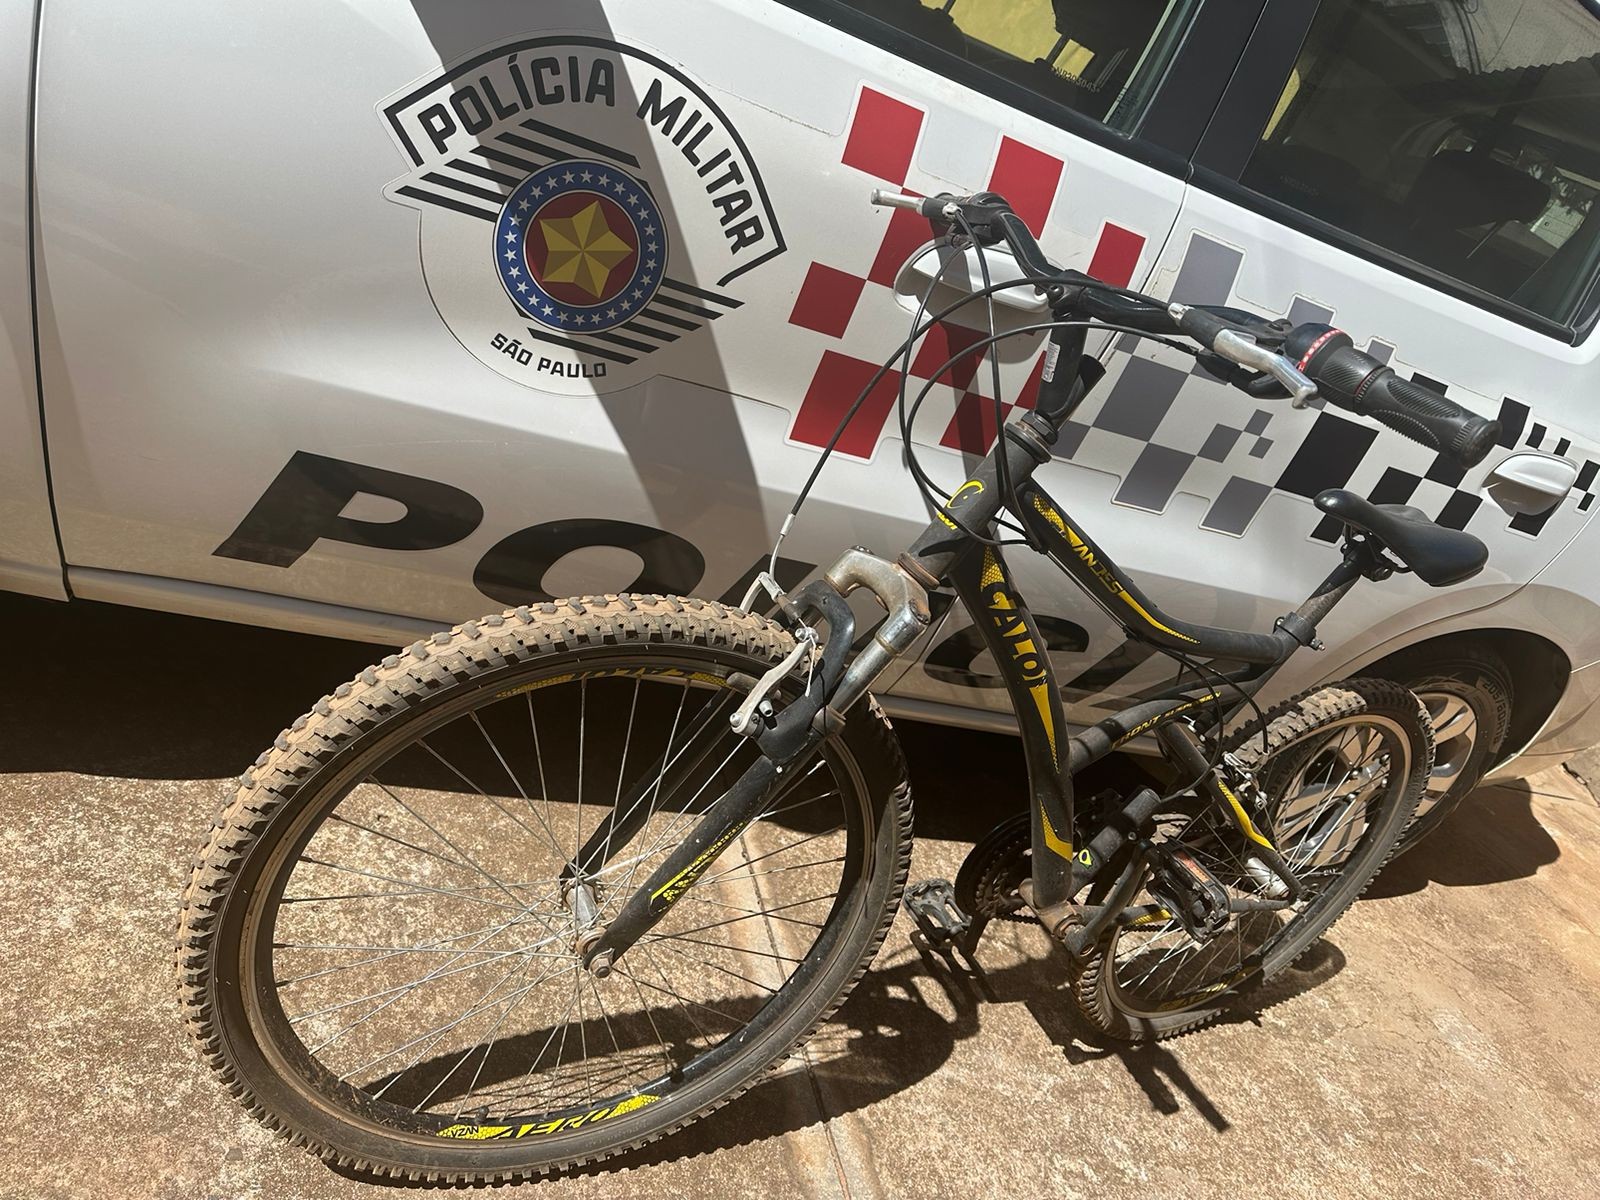 Jovem de 21 anos é preso em flagrante após furtar bicicleta no Balneário de Panorama